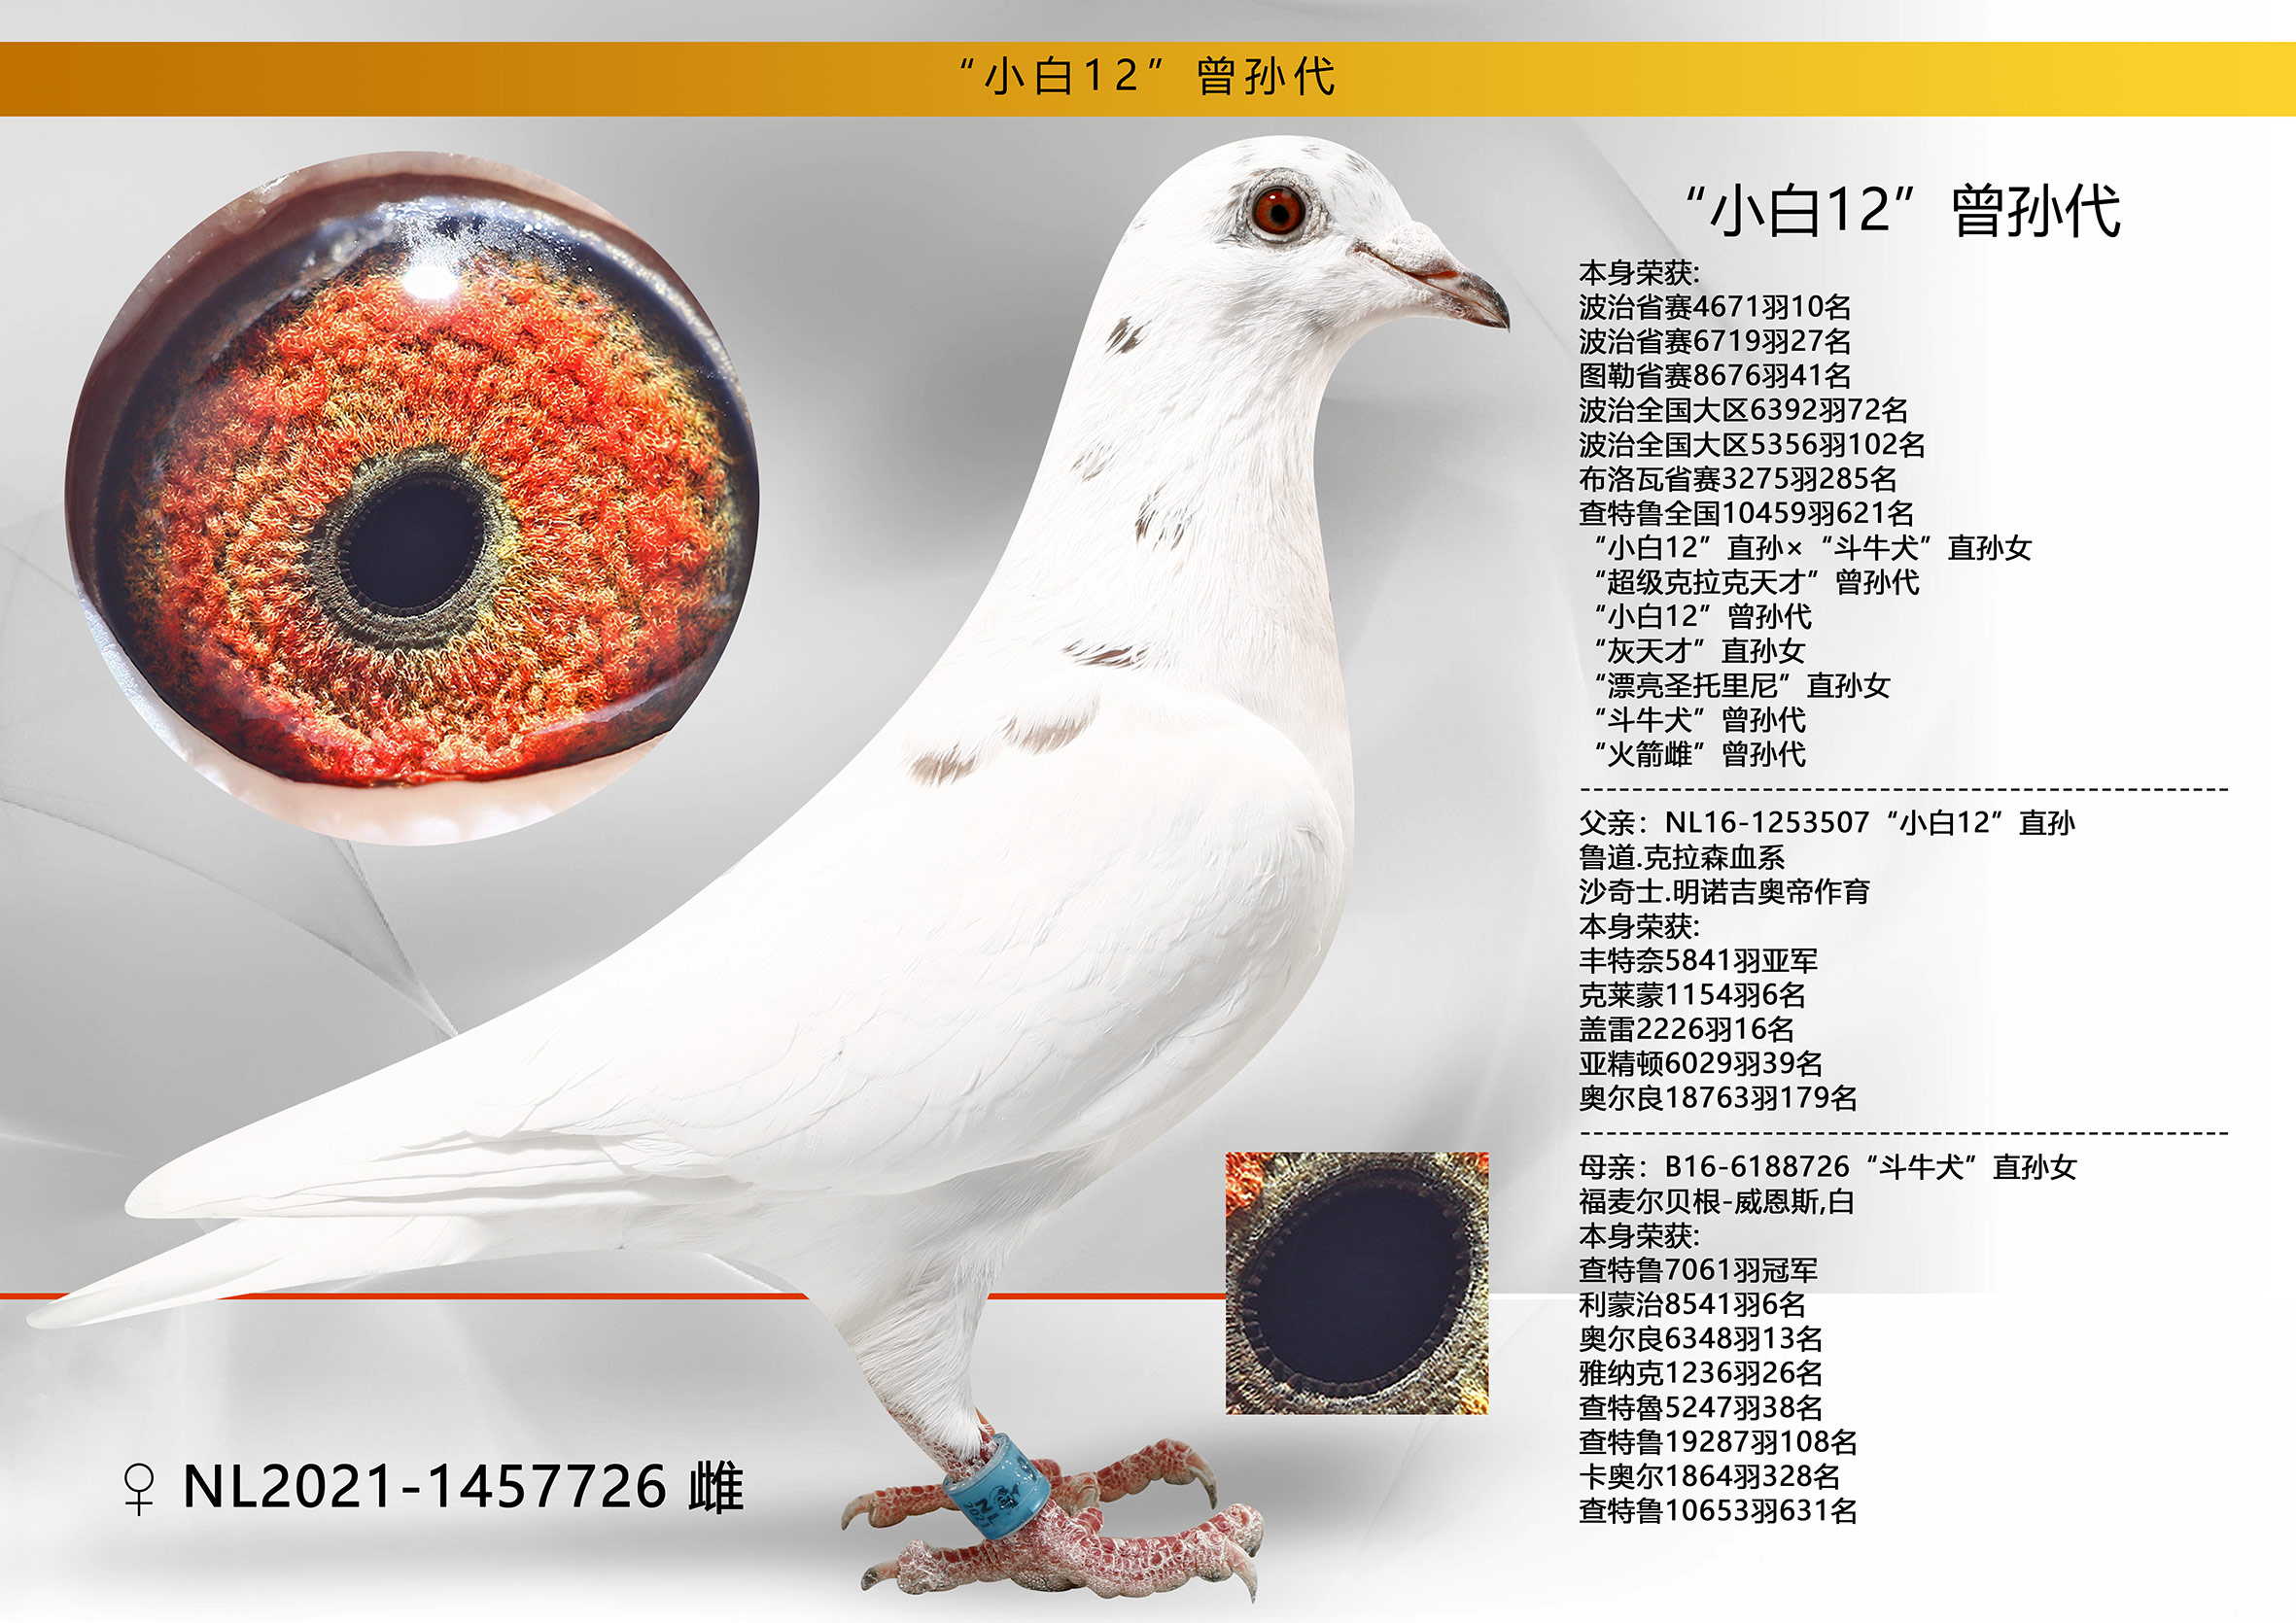 本身荣获: 波治省赛4671羽10名“小白12”直孙×“斗牛-信鸽在线拍卖平台 